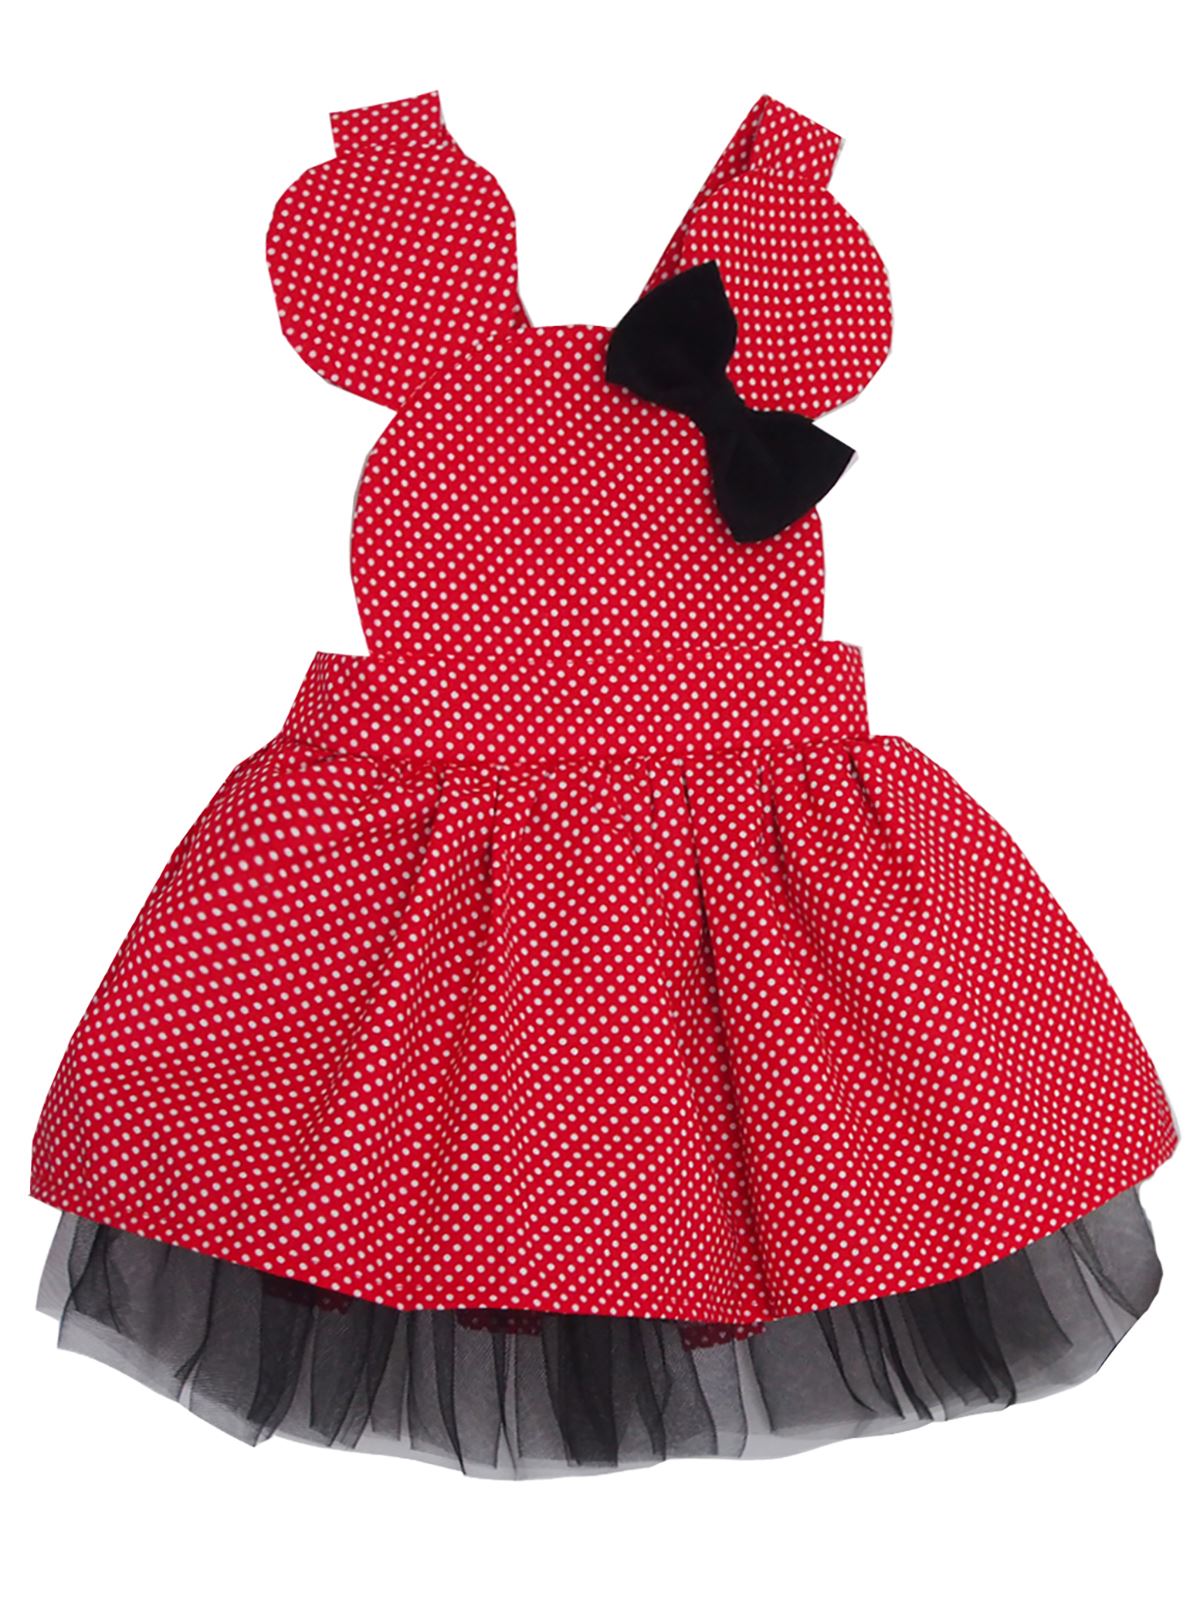 S. Babba Kız Çocuk Elbise Sevimli Mini Puantiyeli 1-4 Yaş Kırmızı